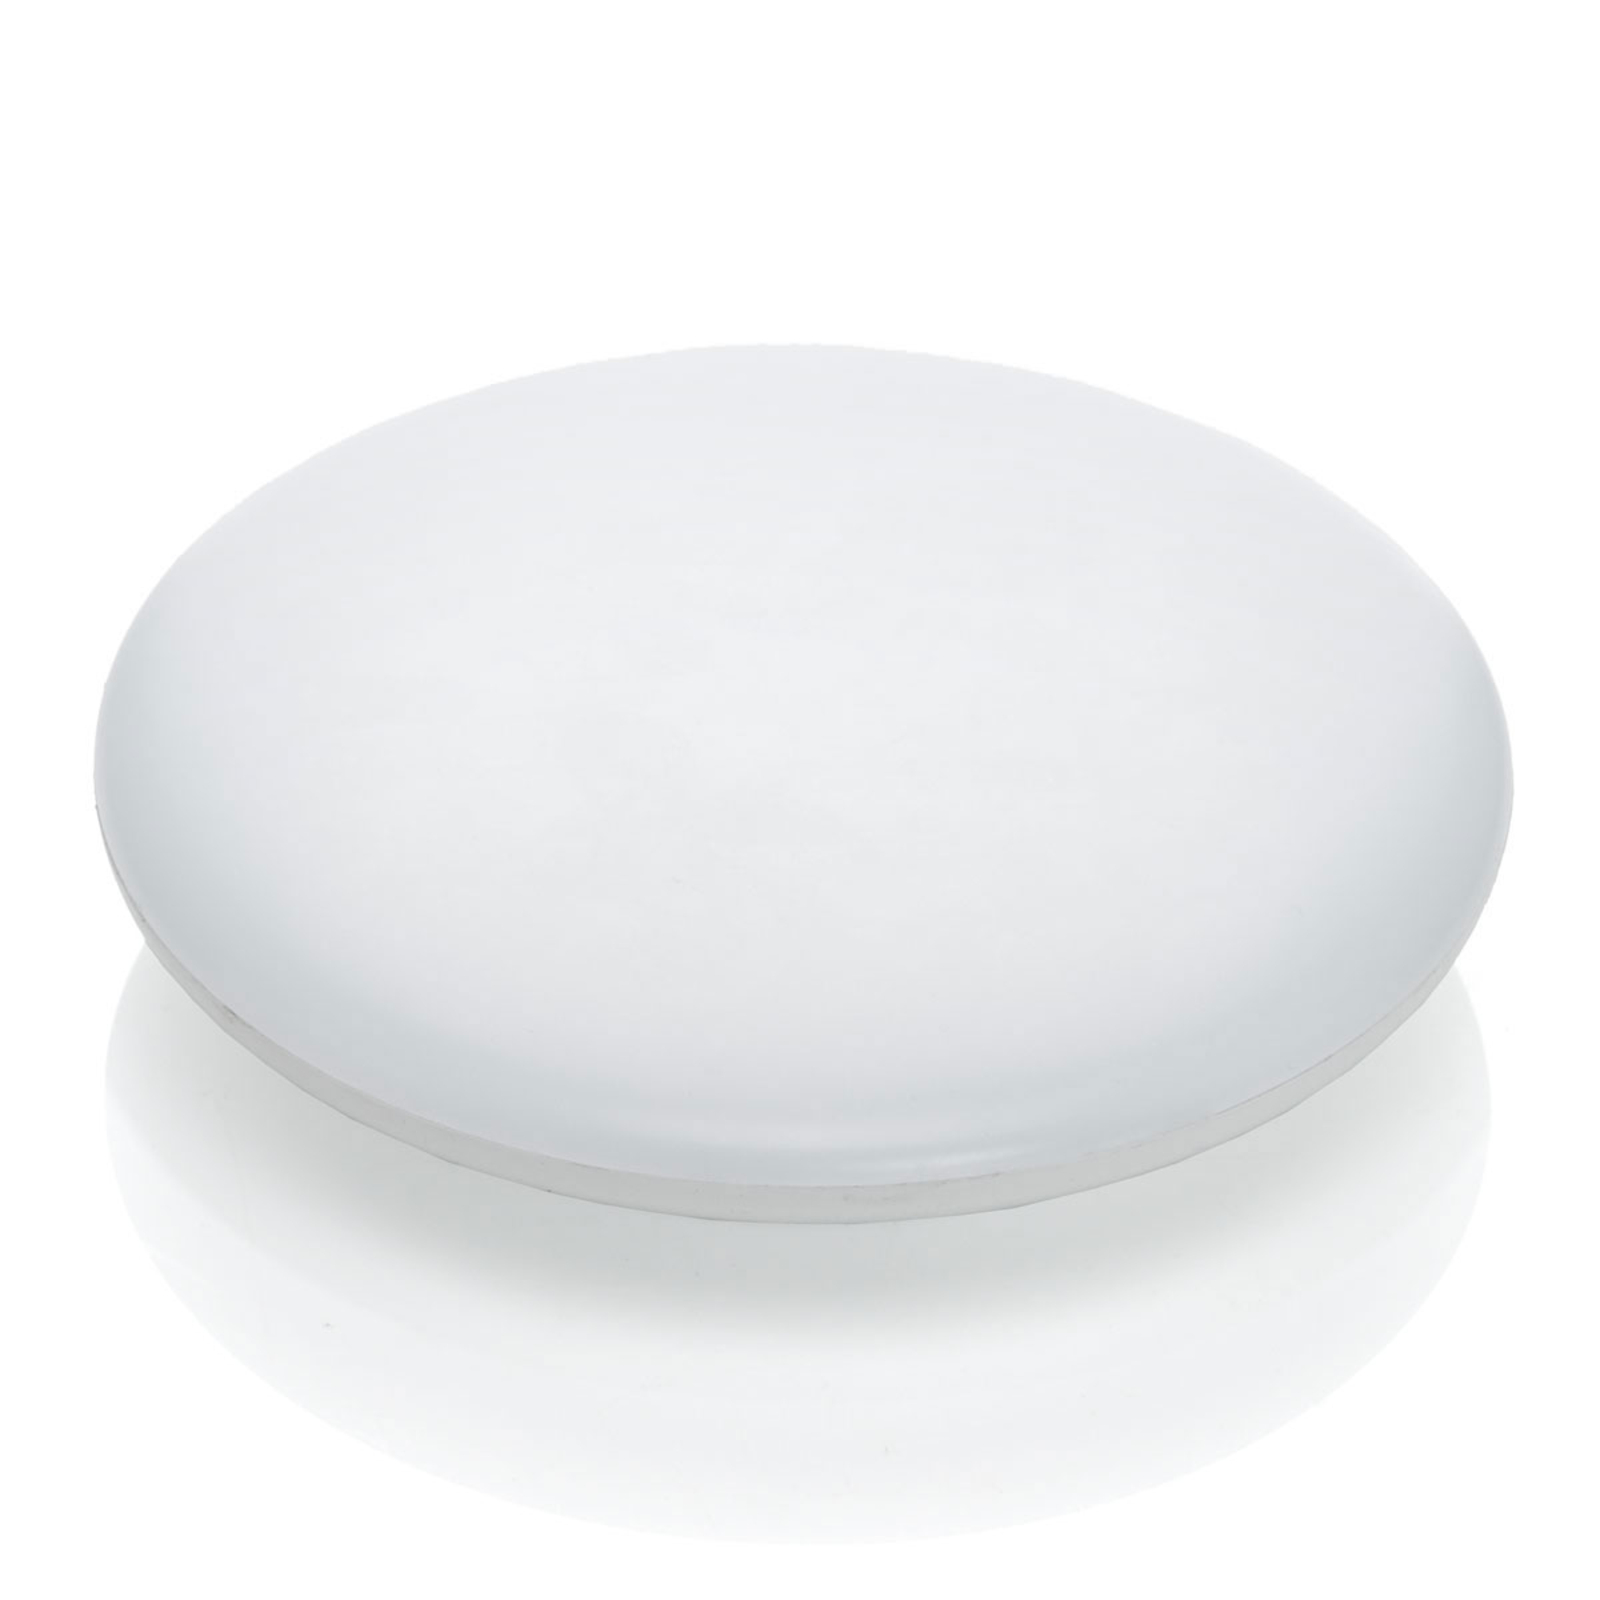 LED-Deckenlampe Azra, weiß, rund, IP54, Ø 25 cm